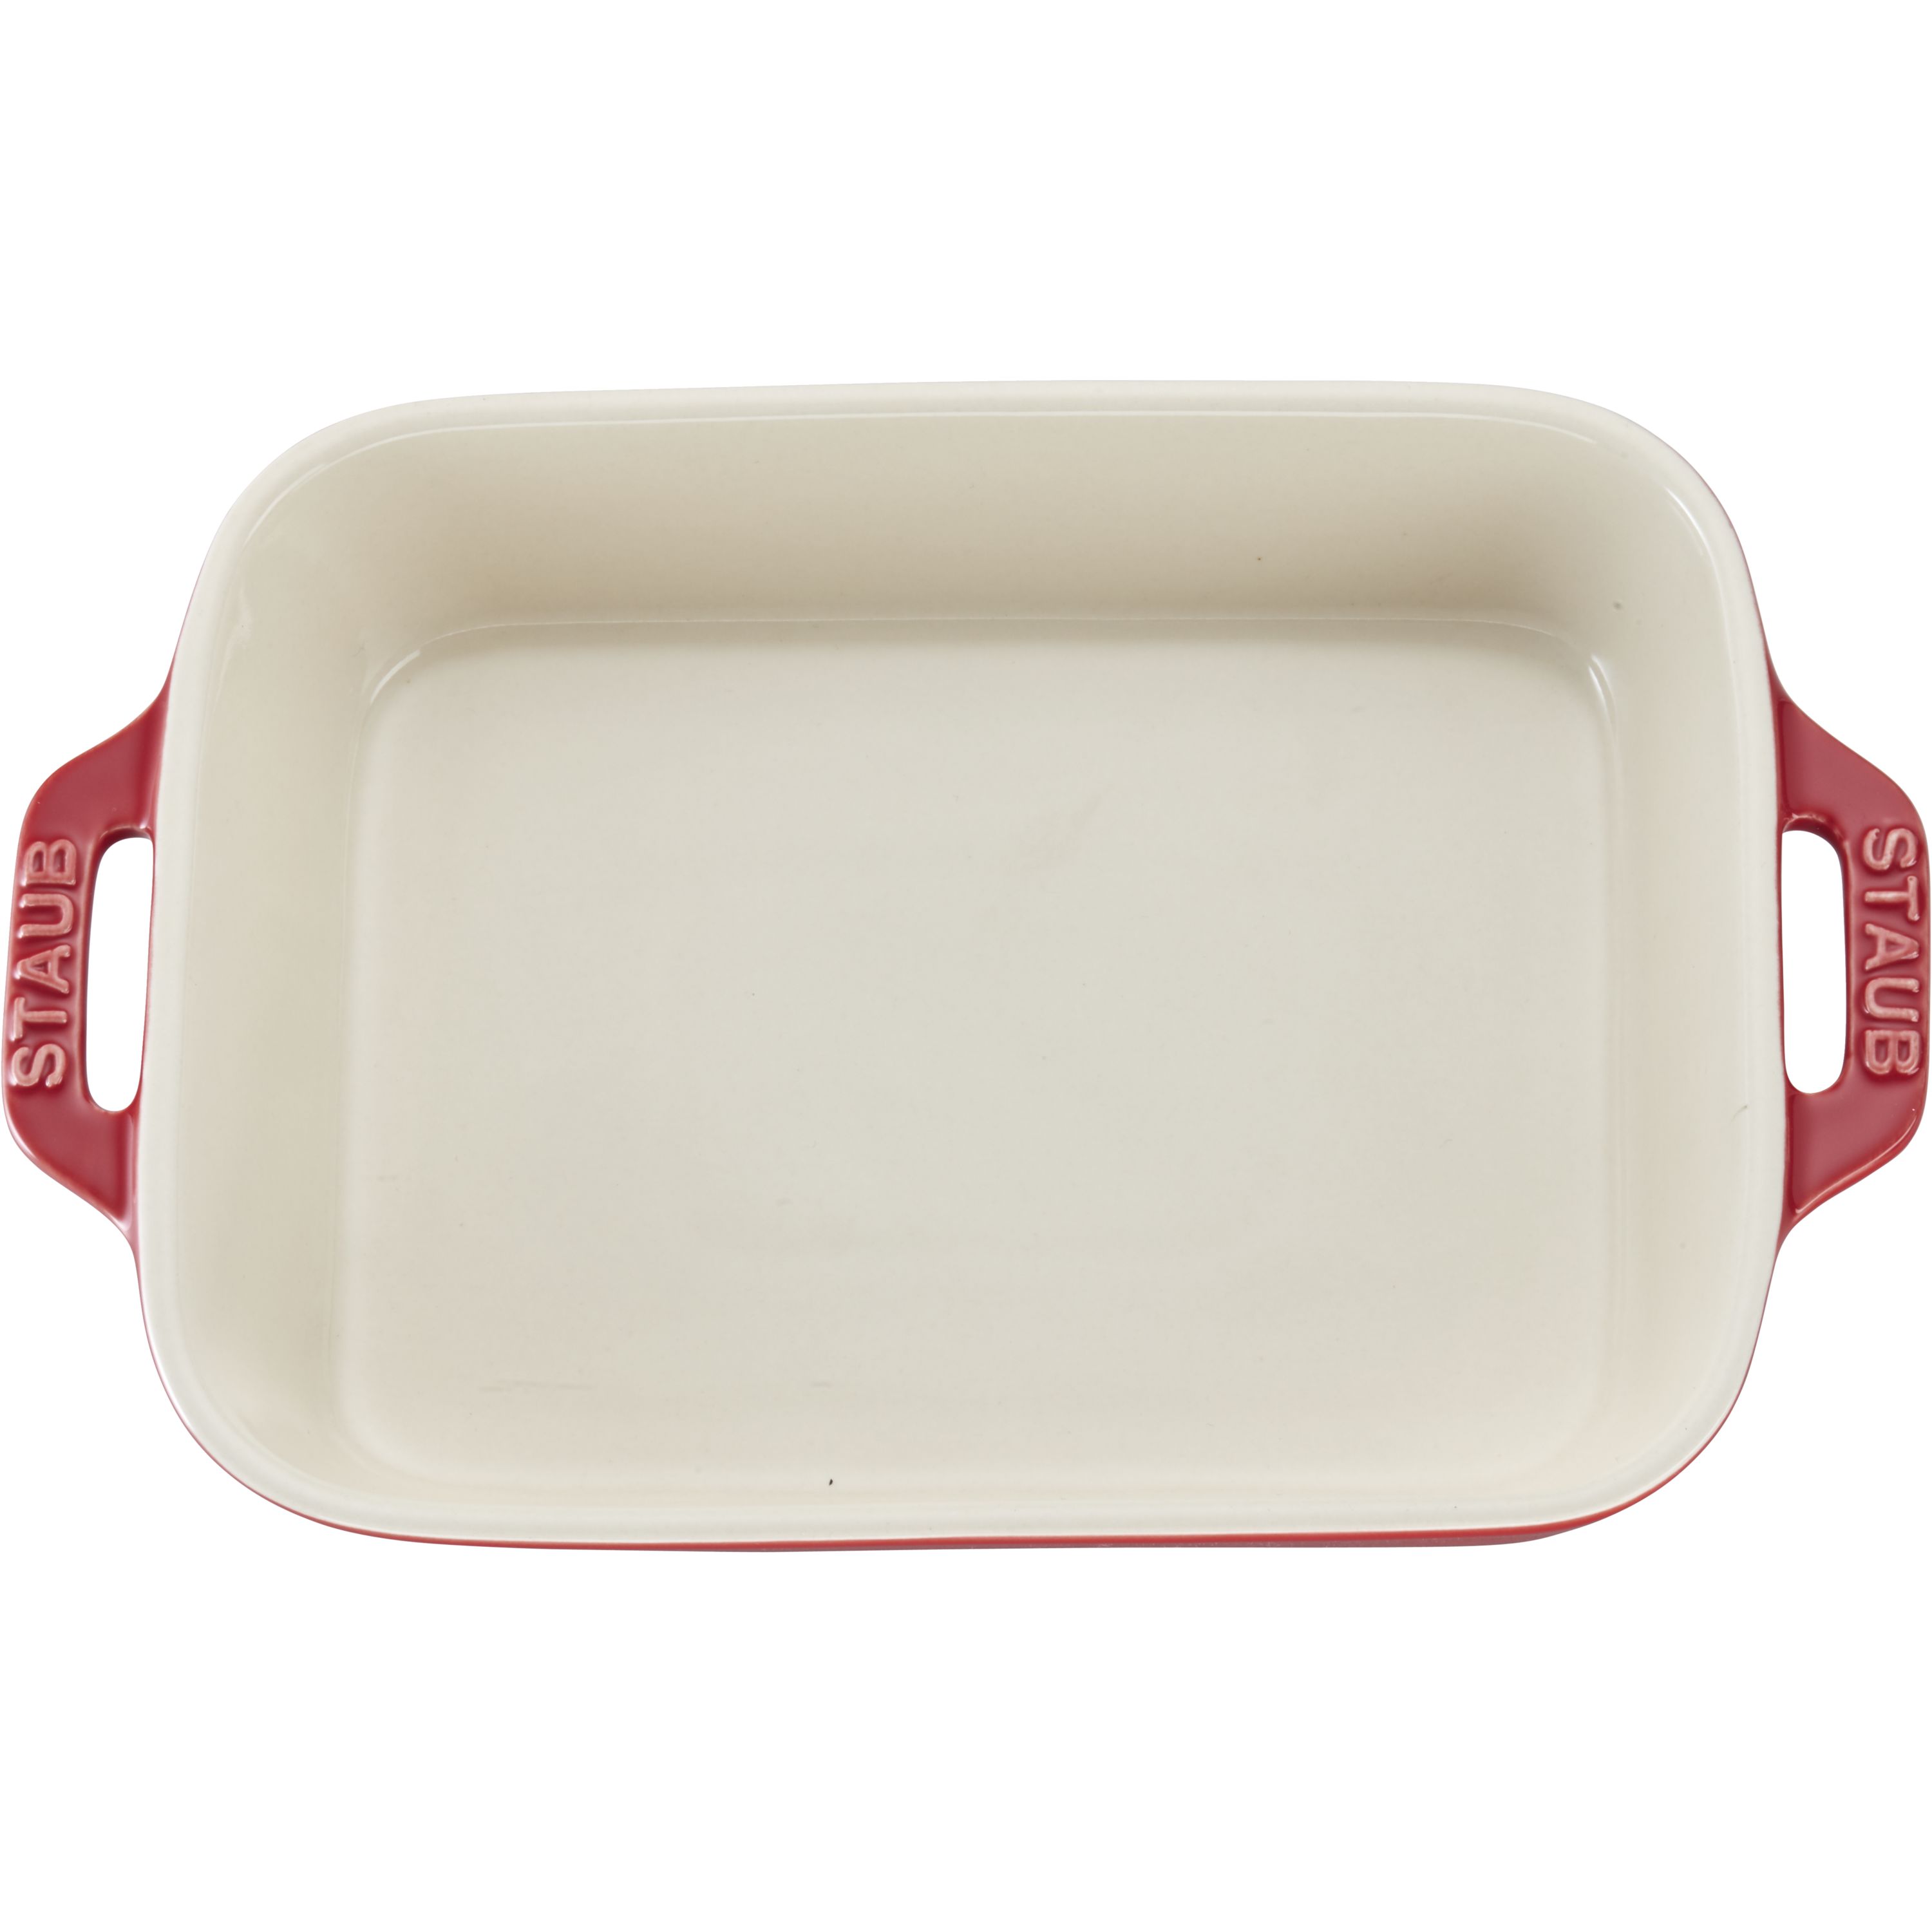 Staub staub ceramics square covered baking dish, 9x9-inch, white